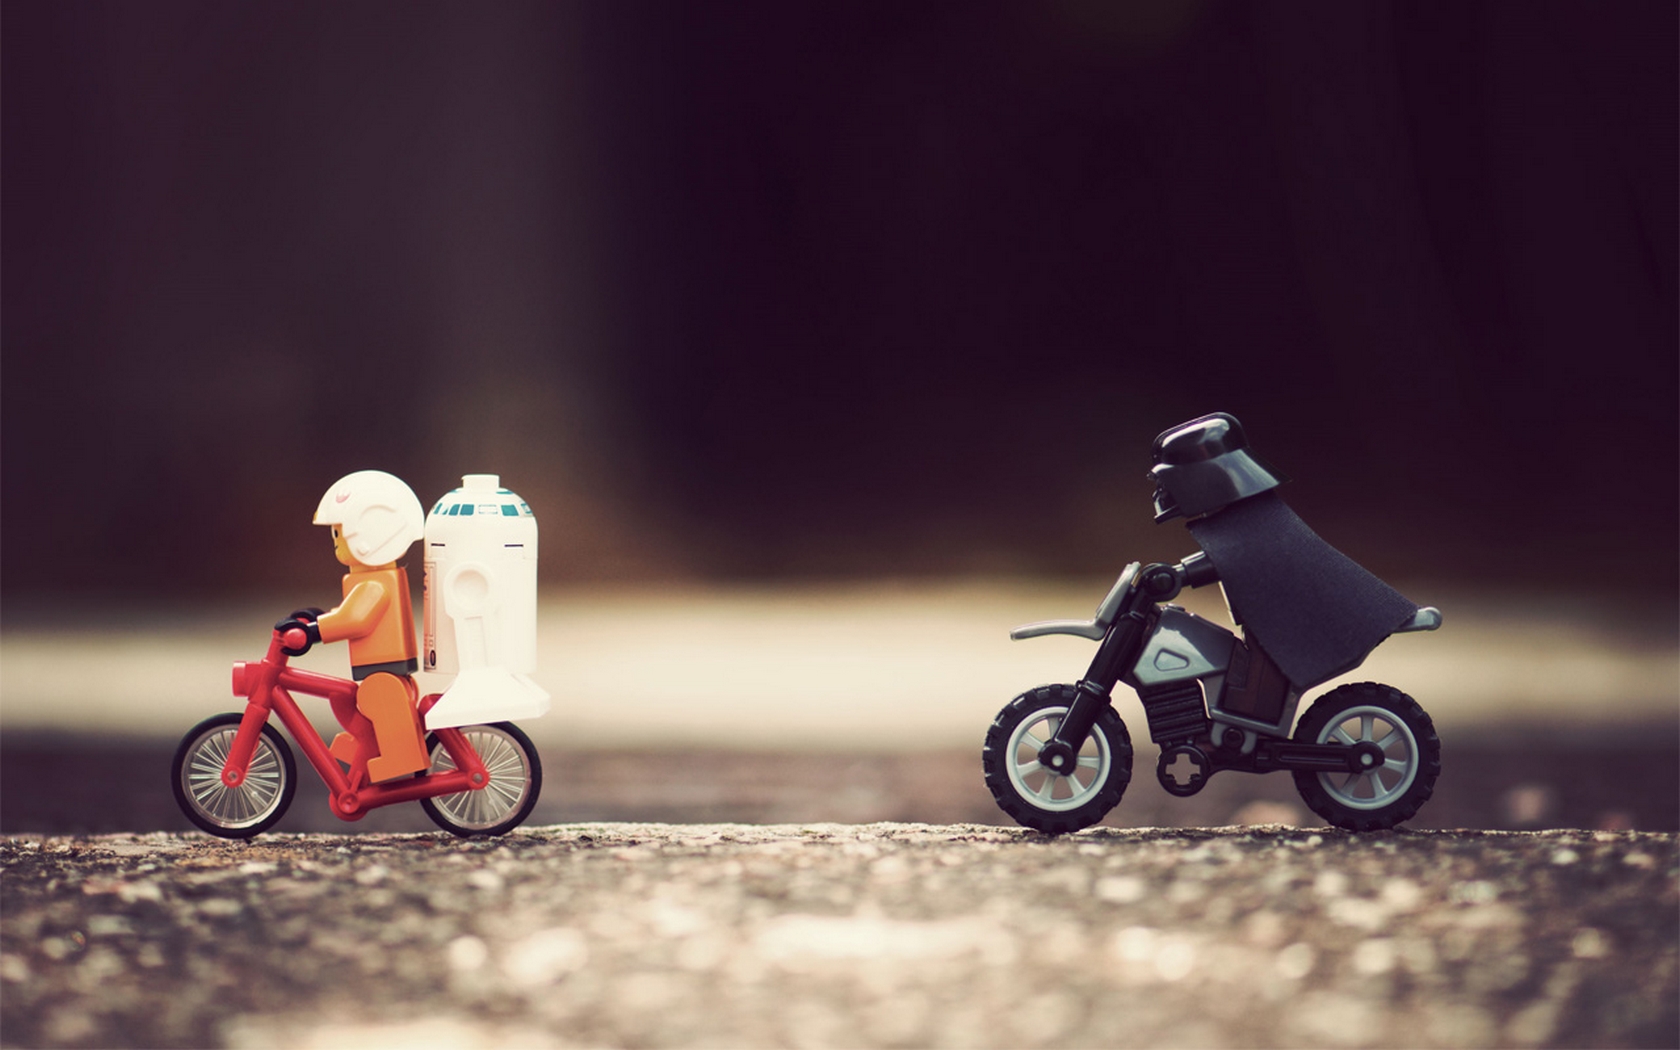 Star Wars Wallpaper Lego Bicycles Darth Vader